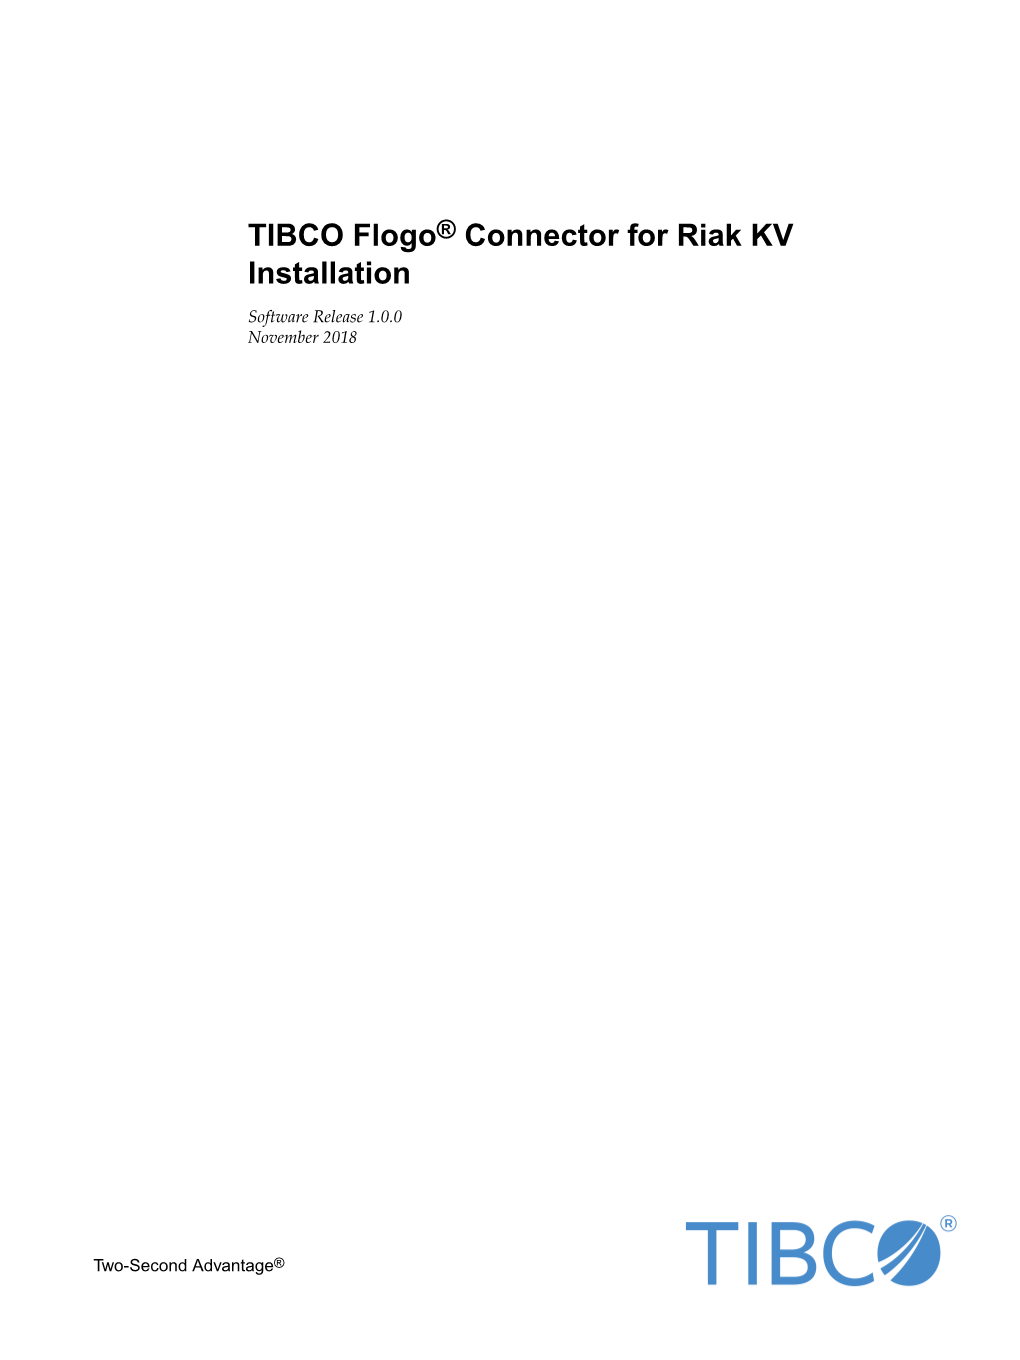 TIBCO Flogo® Connector for Riak KV Installation